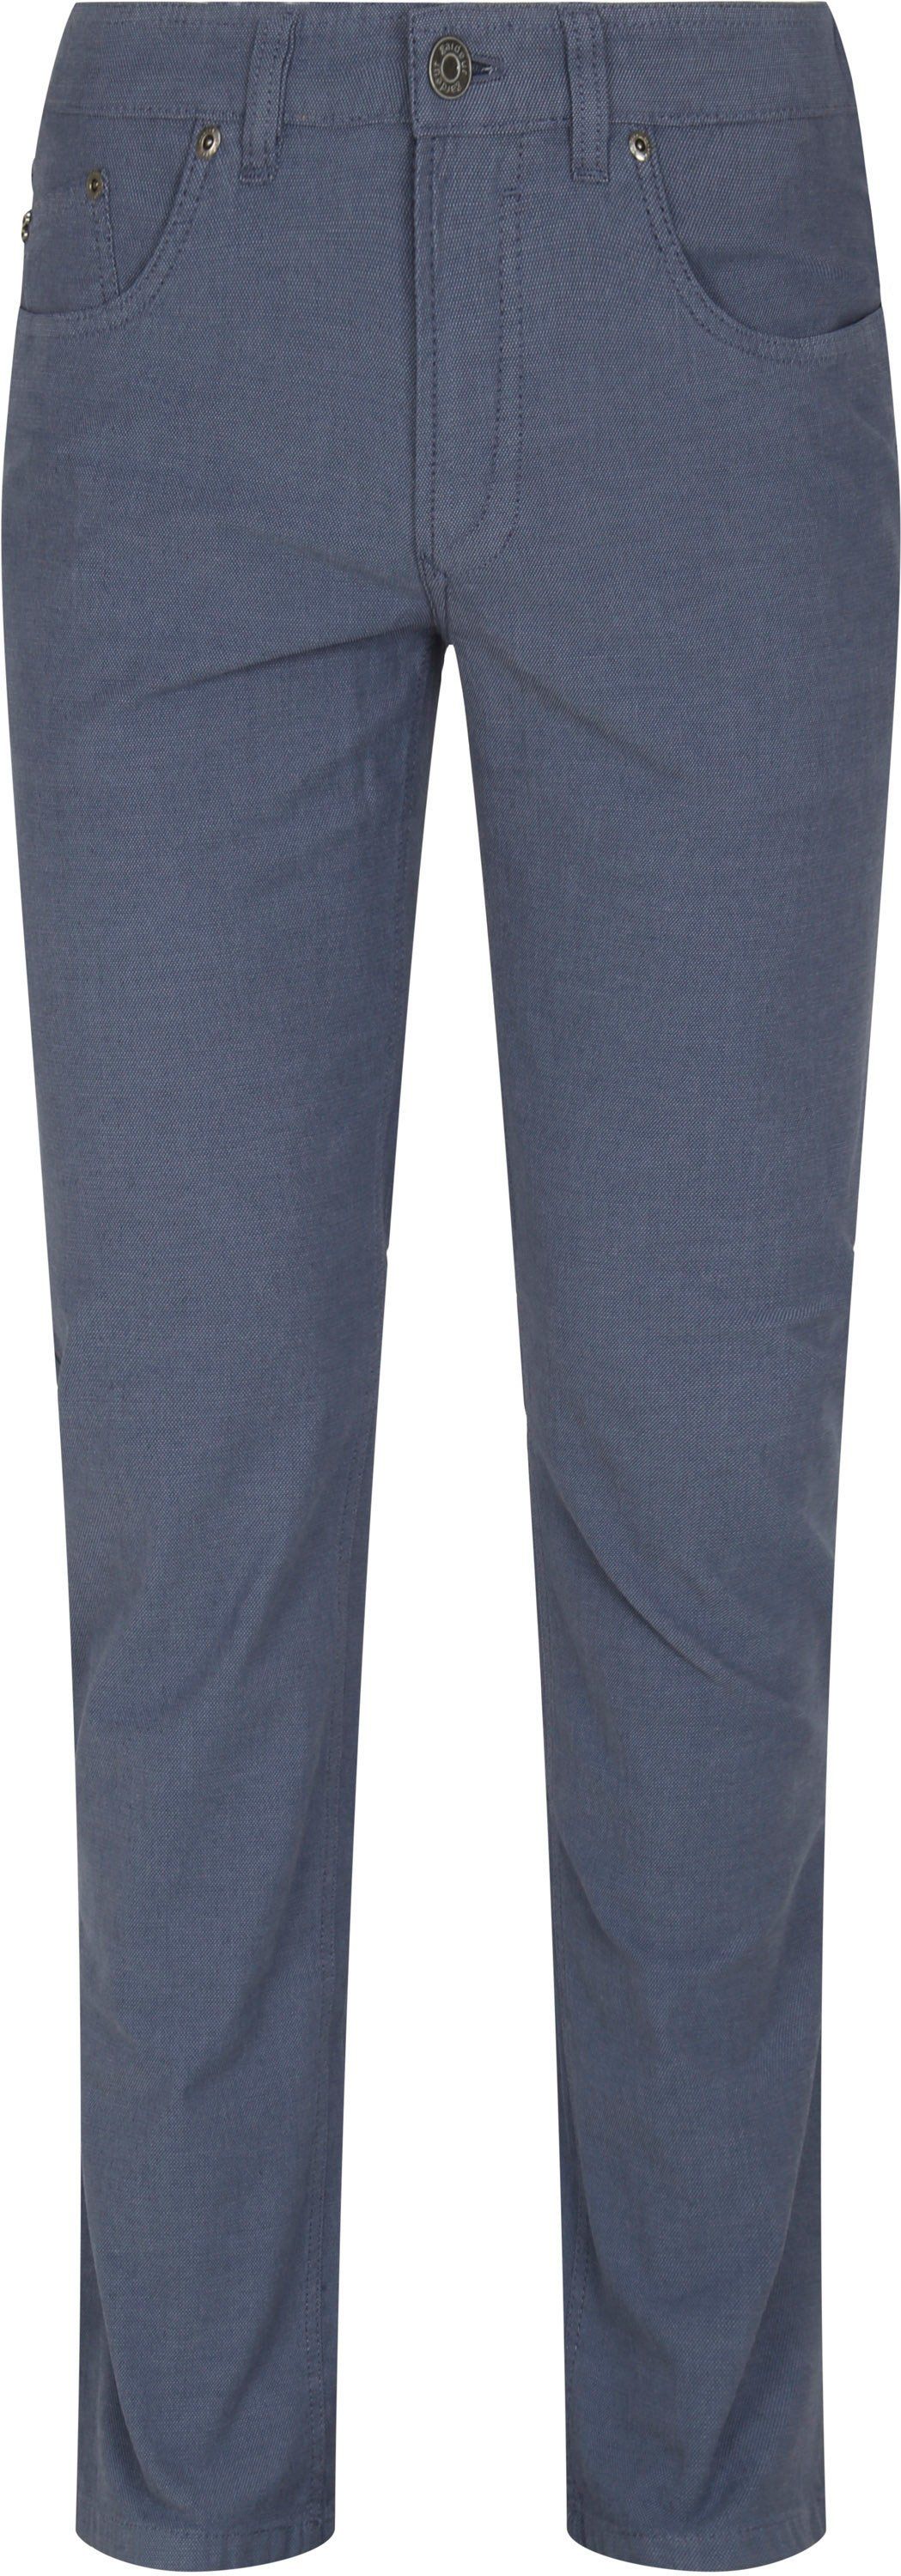 Gardeur Pantalon Bill 5 Poches Bleu taille W 32